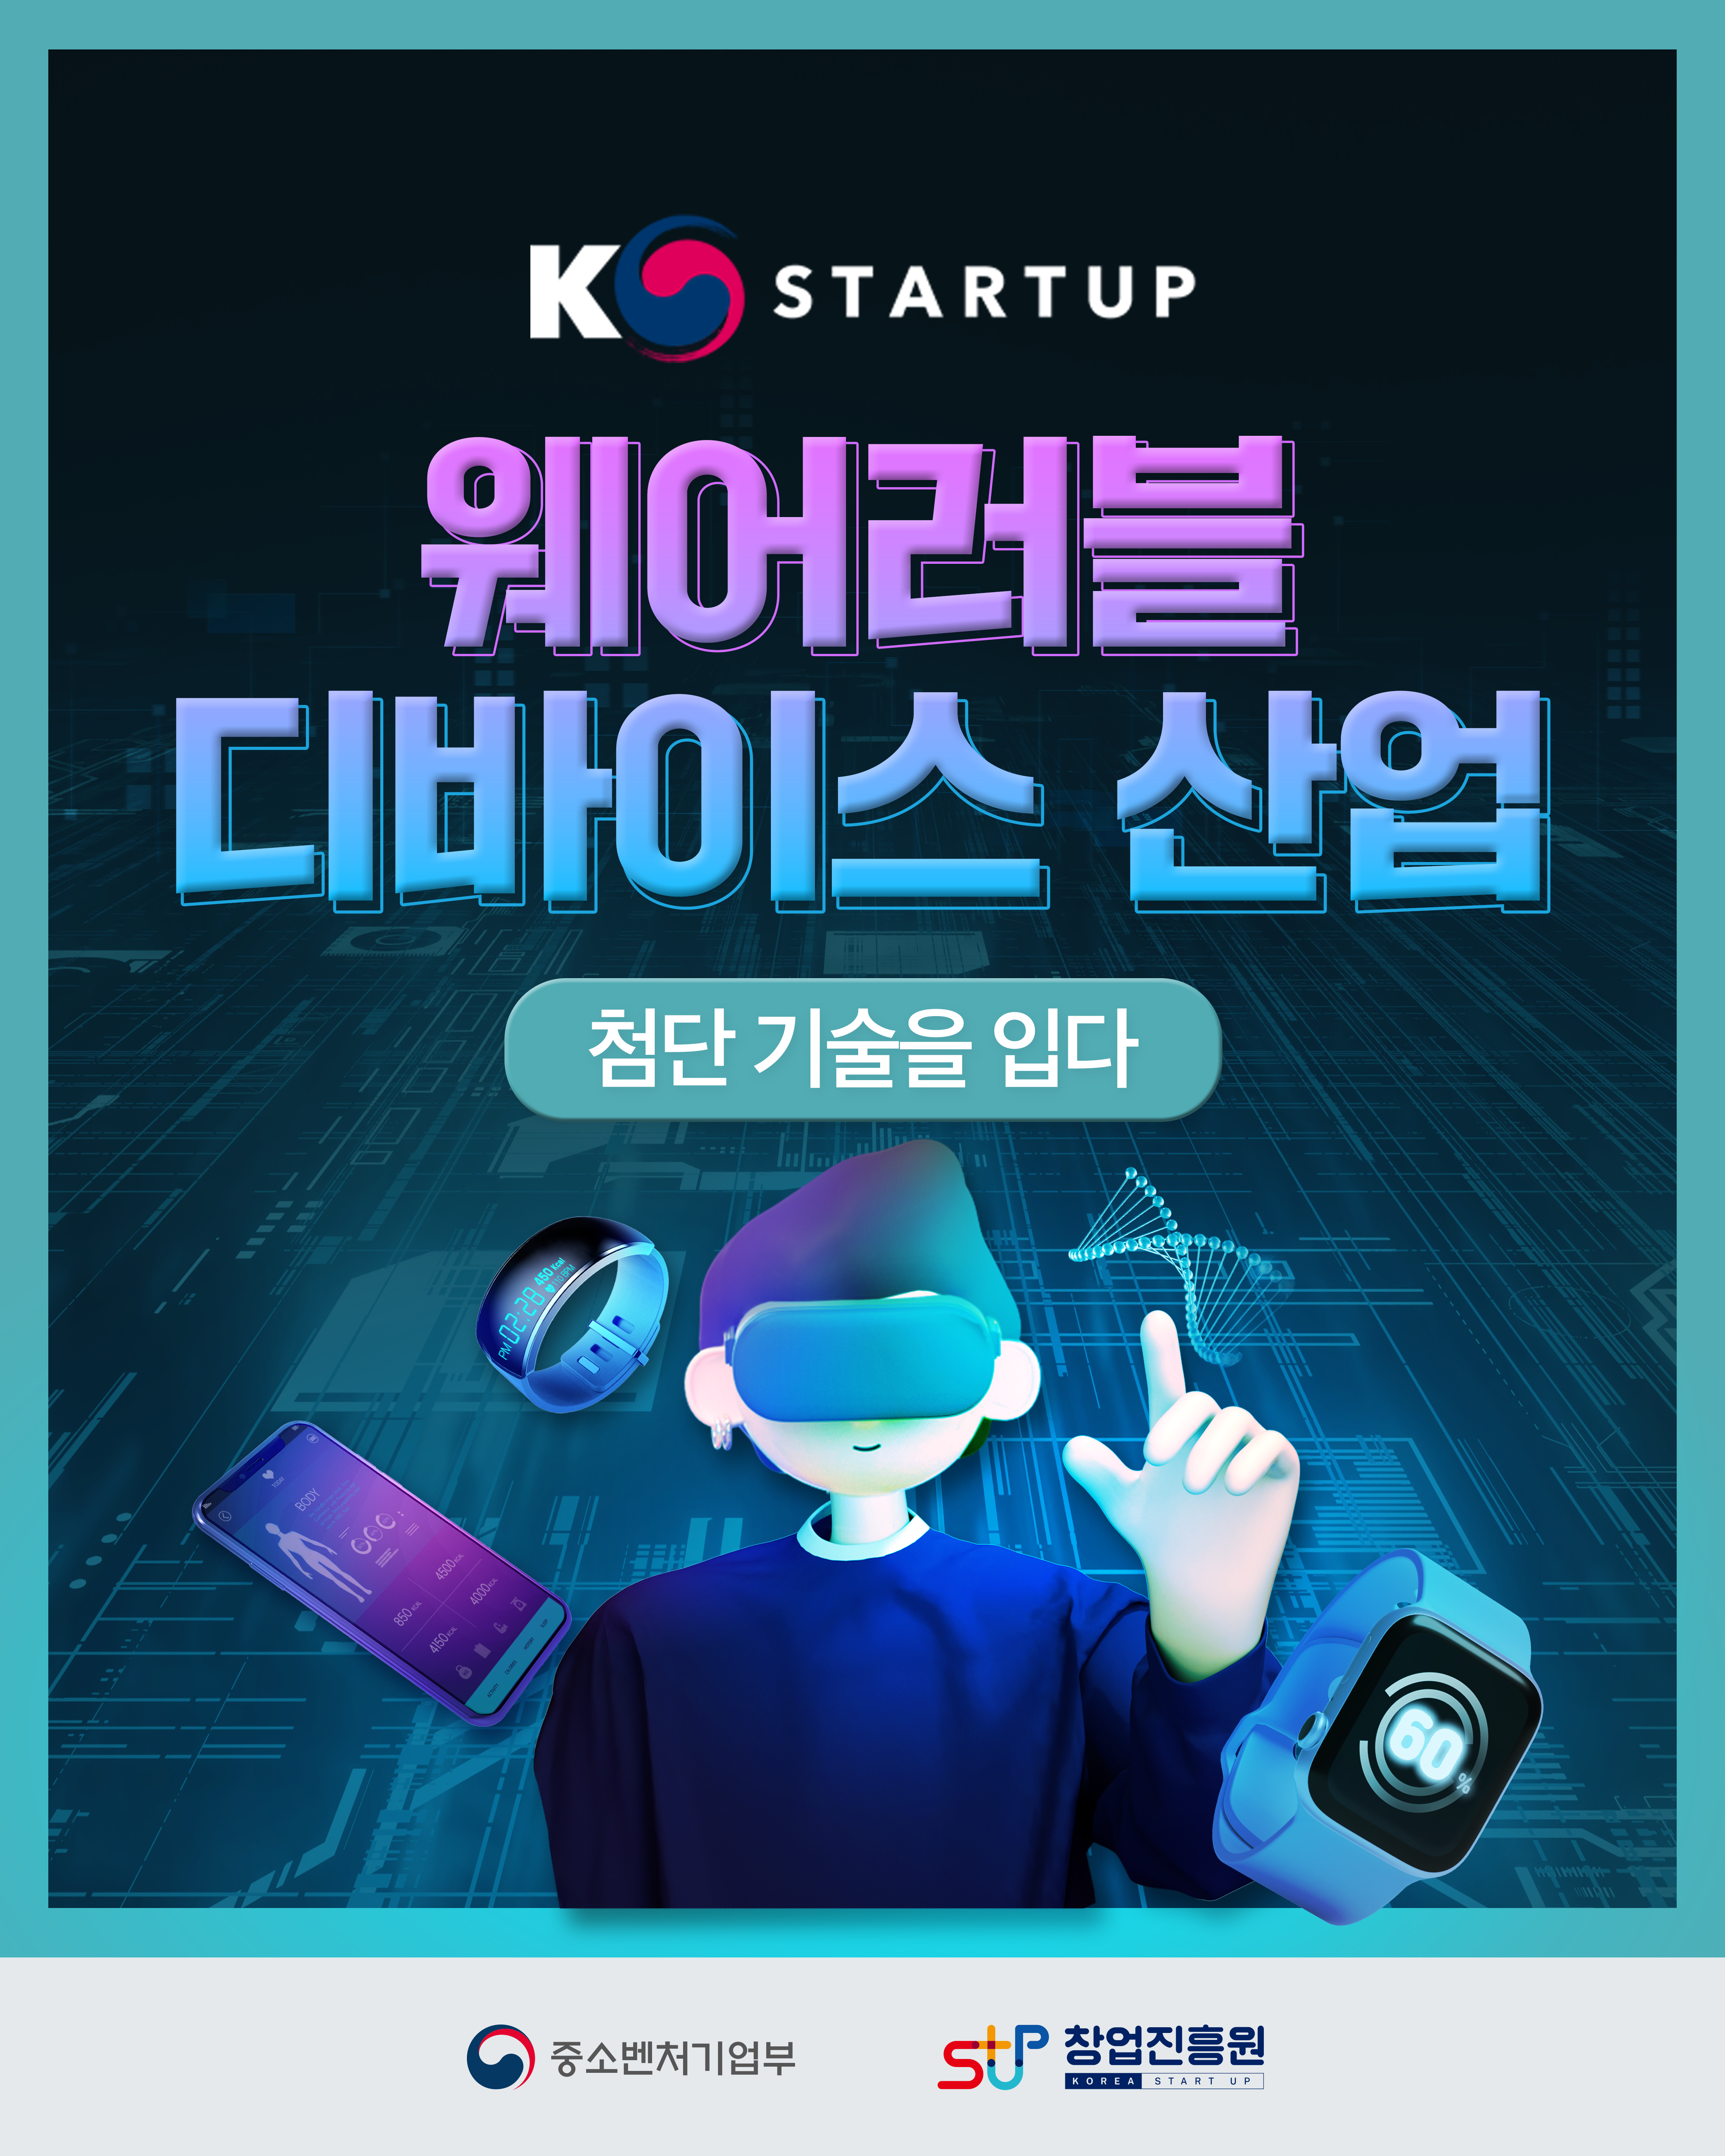 K STARTUP
웨어러블 디바이스 산업
첨단 기술을 입다
중소벤처기업부 창업진흥원